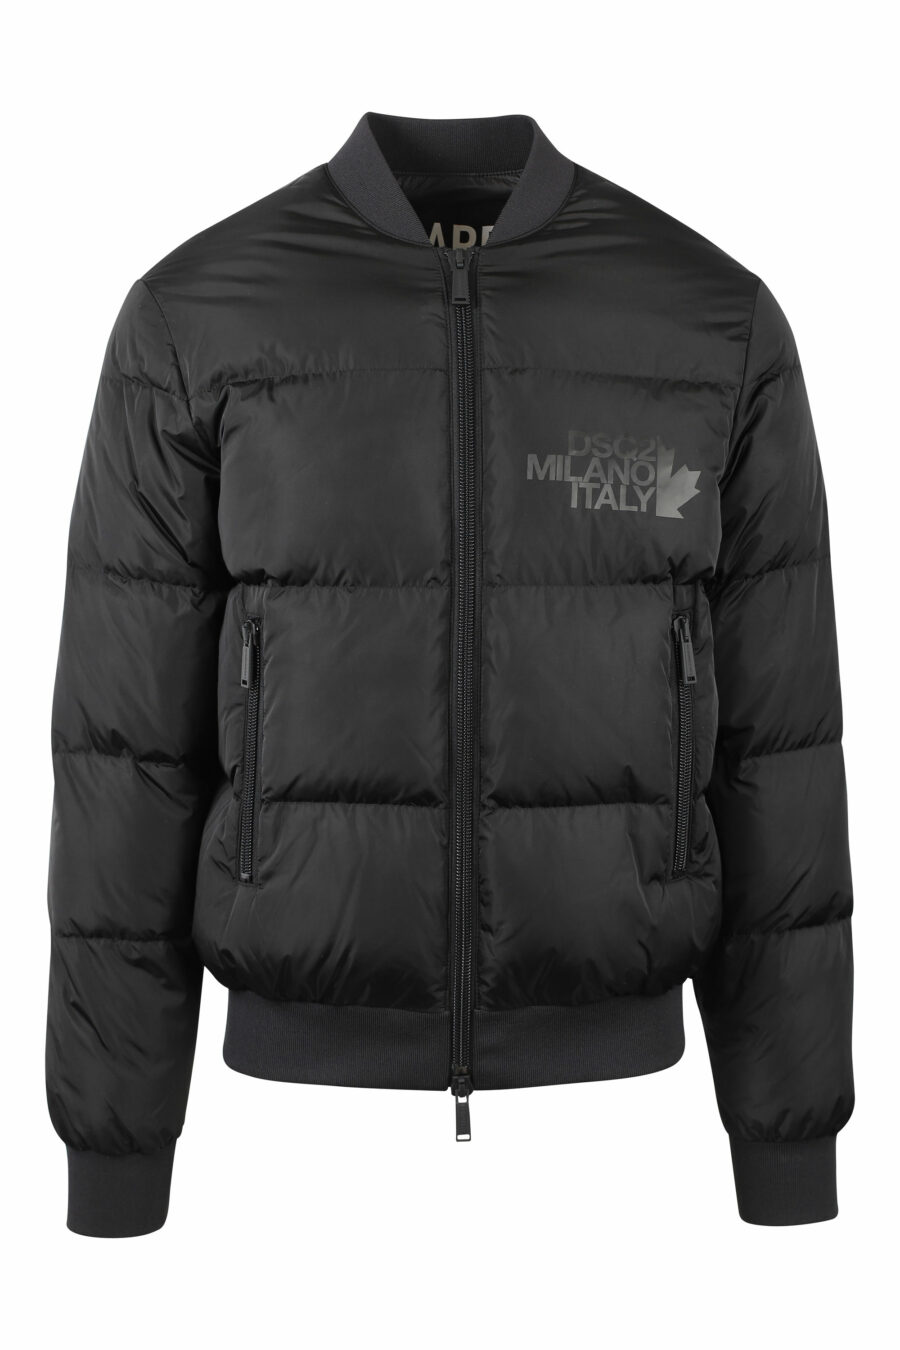 Schwarze Jacke mit schwarzem Logo - IMG 0768